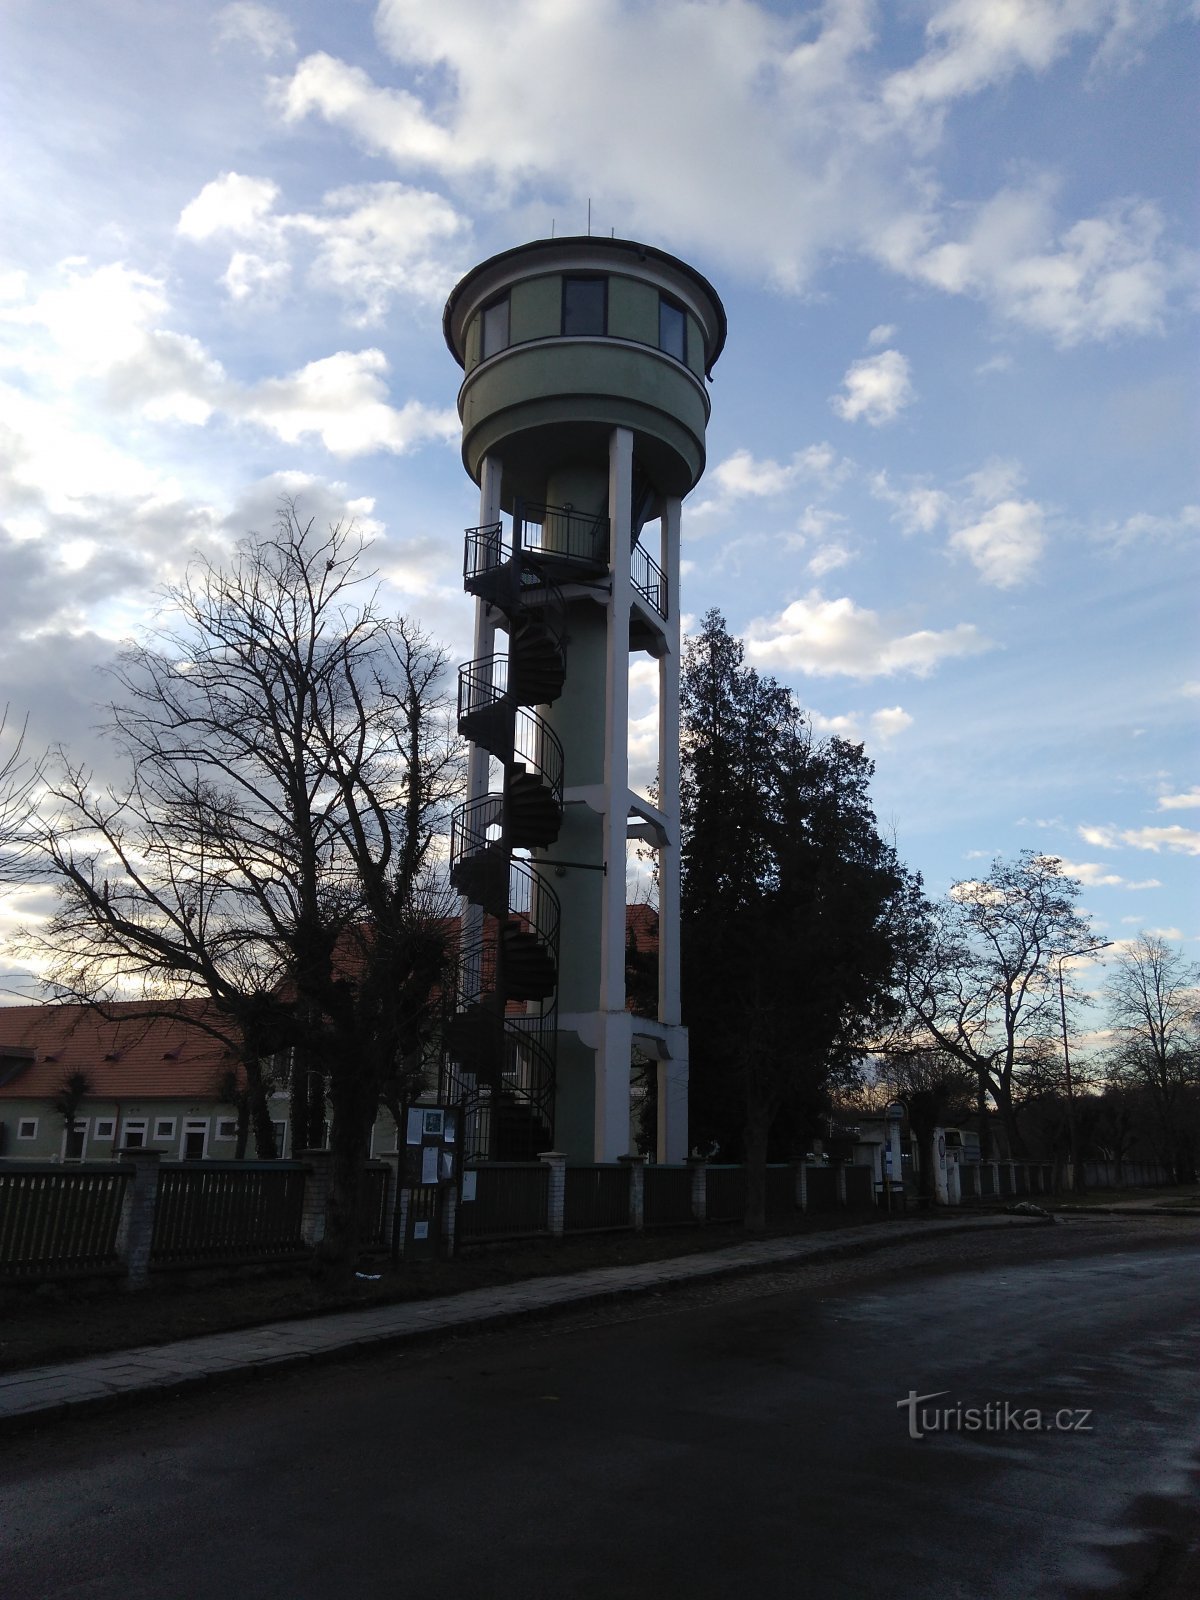 Kladruby nad Labem - Vodojem observation tower